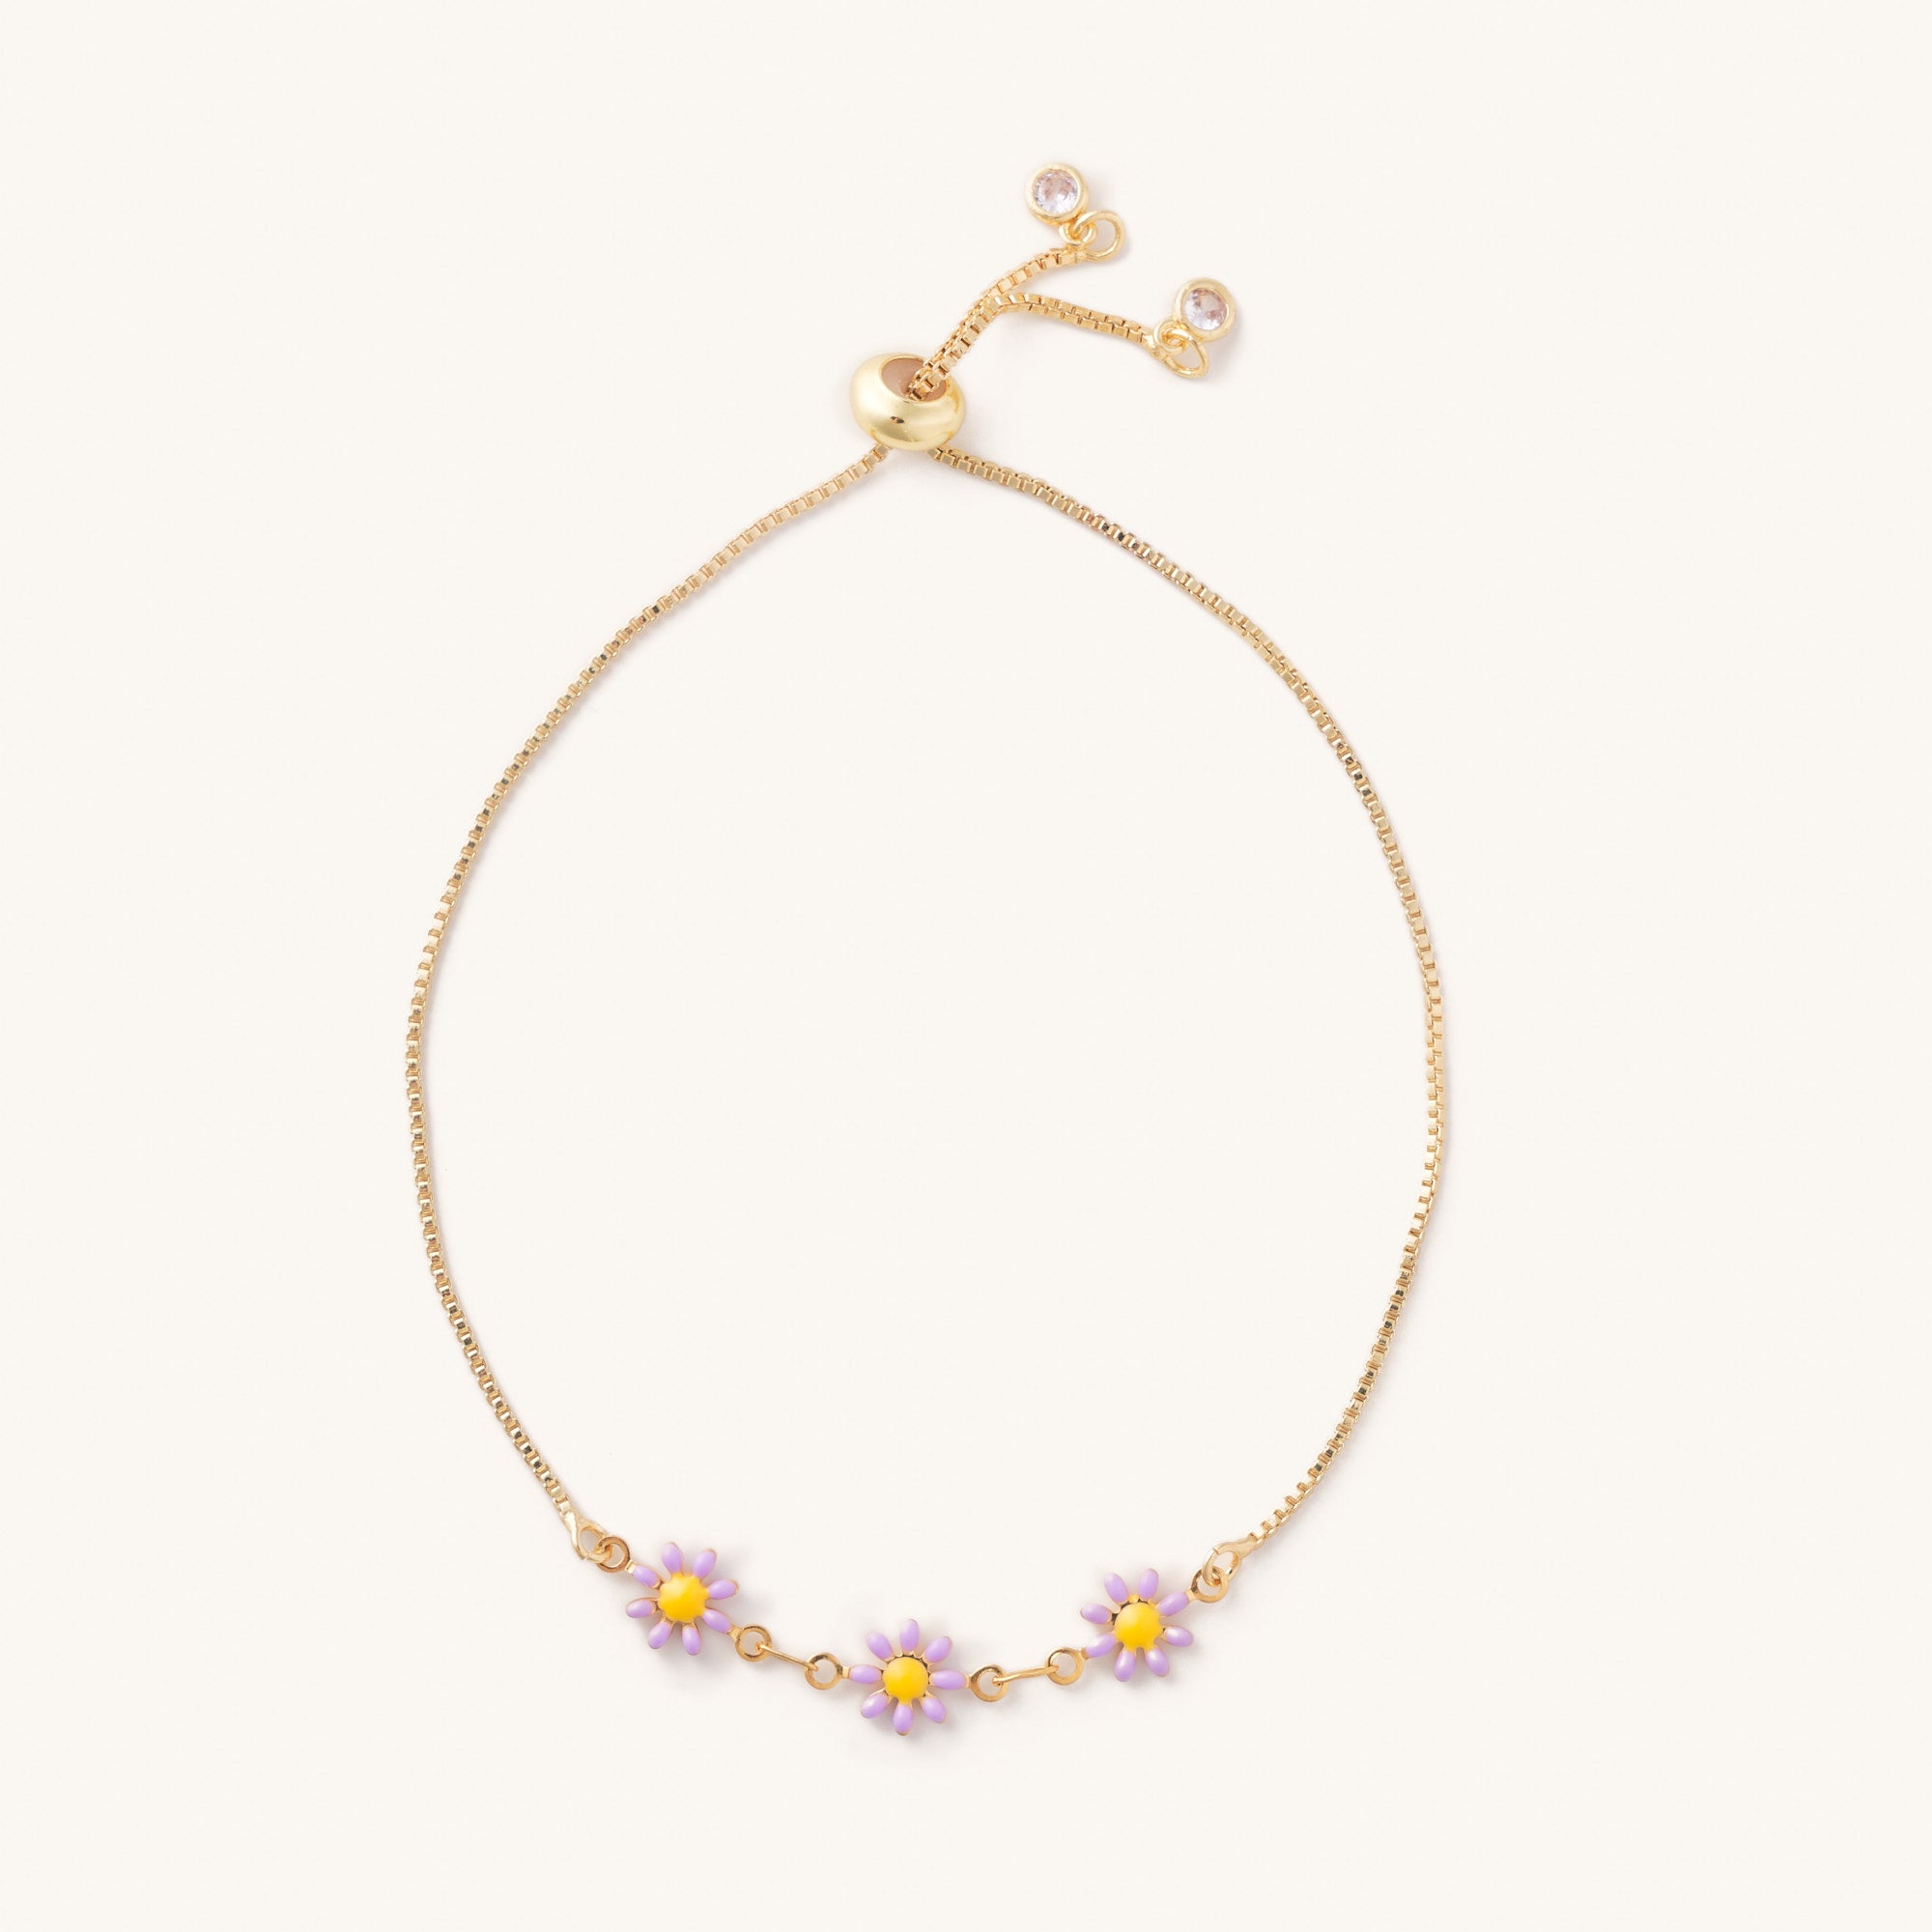 Buy Daisy Bracelet, Daily Flower Bracelet, Wedding Jewelry, Pastel Themed  Accessories, Friendship Bracelet, Cute Bracelet Online in India - Etsy